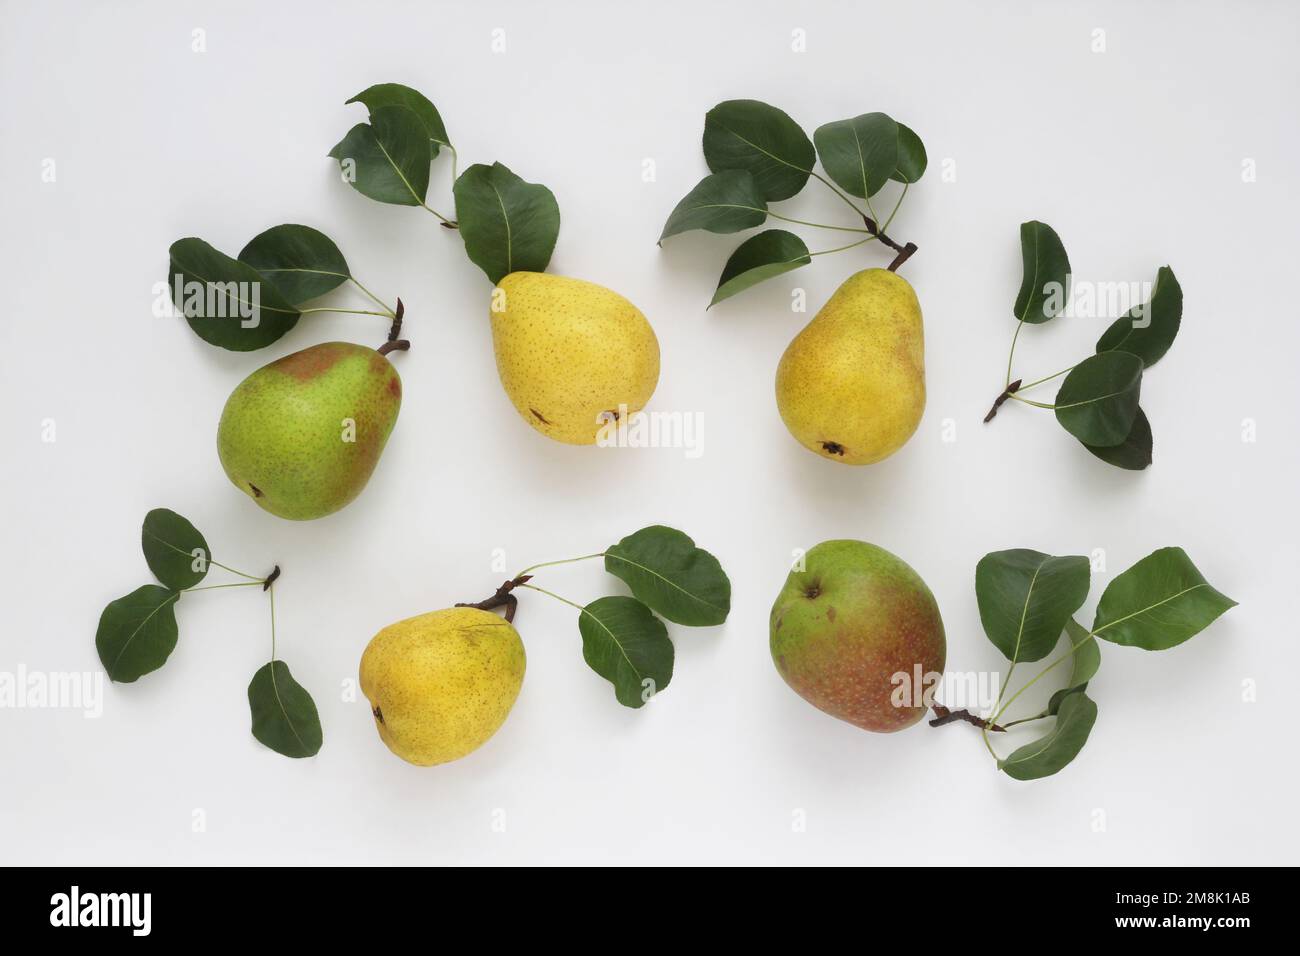 Ensemble de fruits frais de poire jaune rouge vert avec feuilles sur fond blanc, vue sur le dessus de la table du studio. Composition de la pose à plat. Banque D'Images